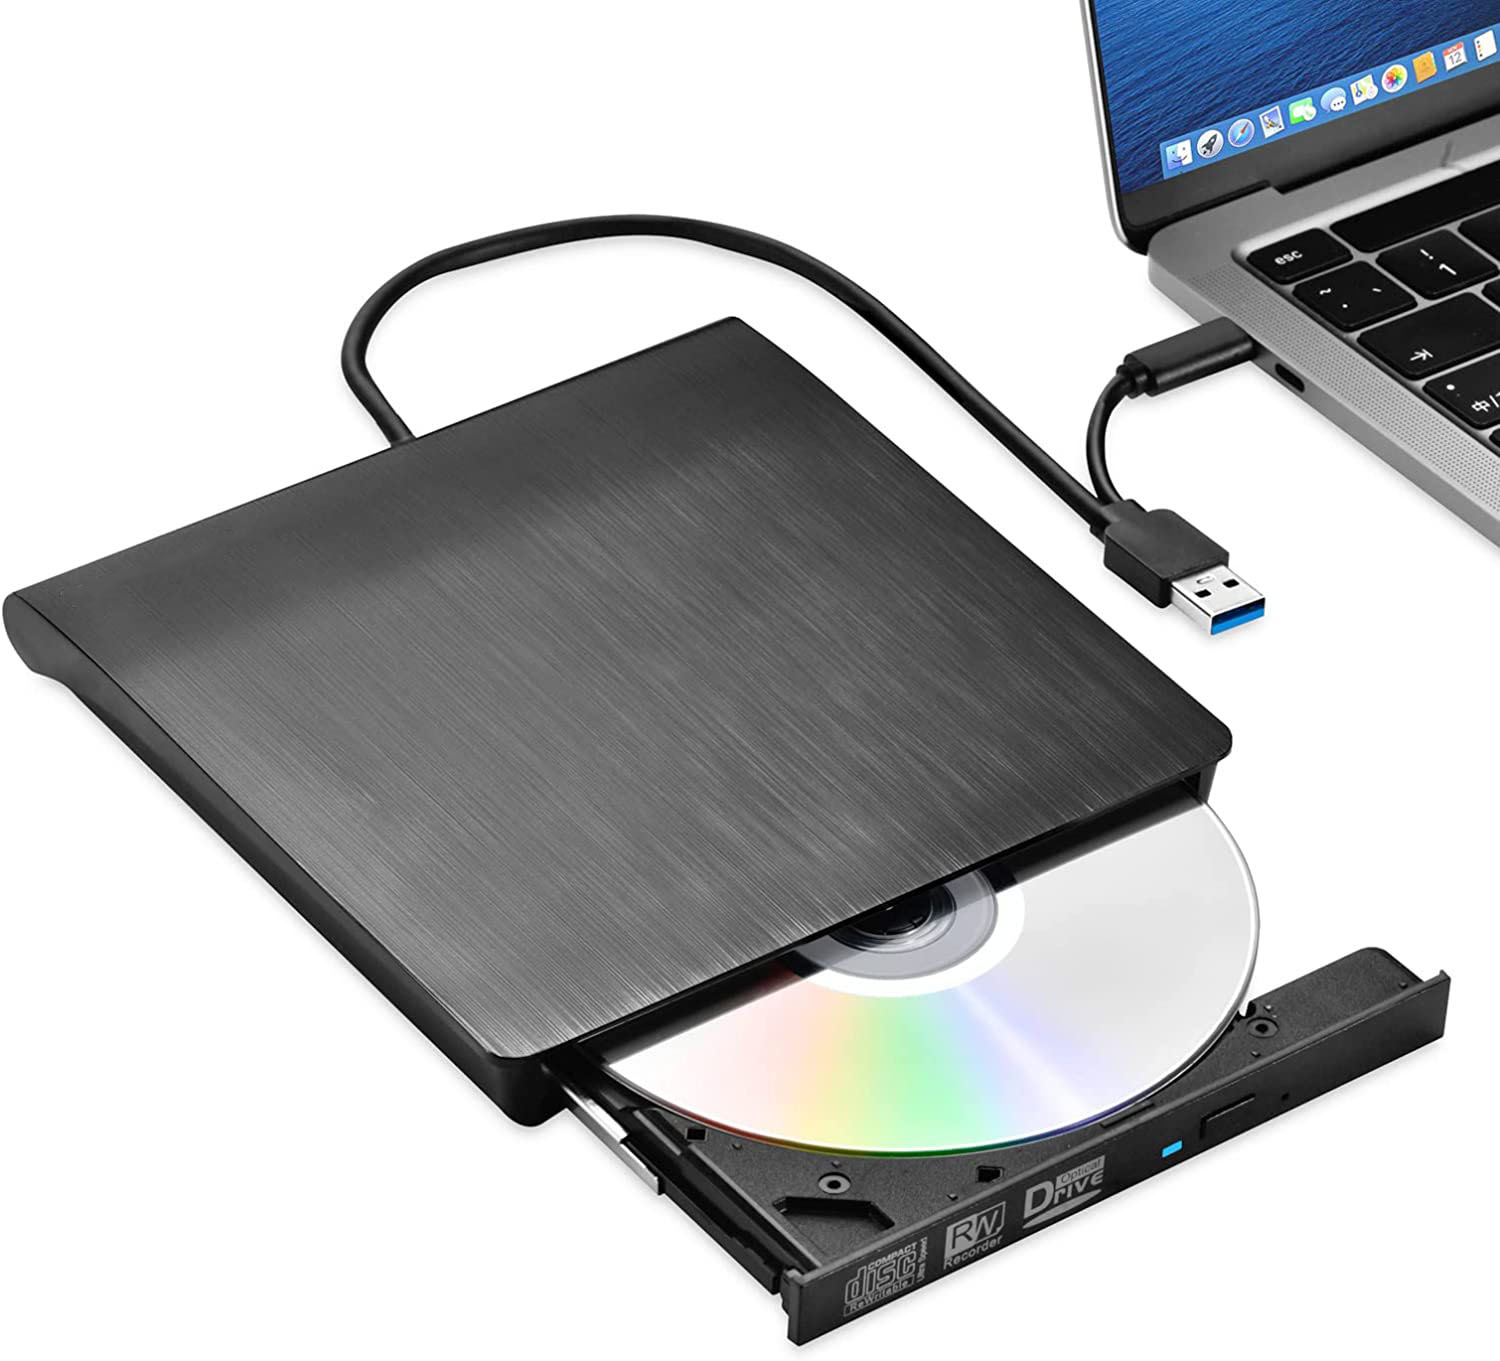 Ổ đĩa quang CD/DVD-RW cắm ngoài USB 3.0, Type-C cho Macbook, Laptop hỗ trợ đọc ghi đĩa dvd, cd tốc độ cao